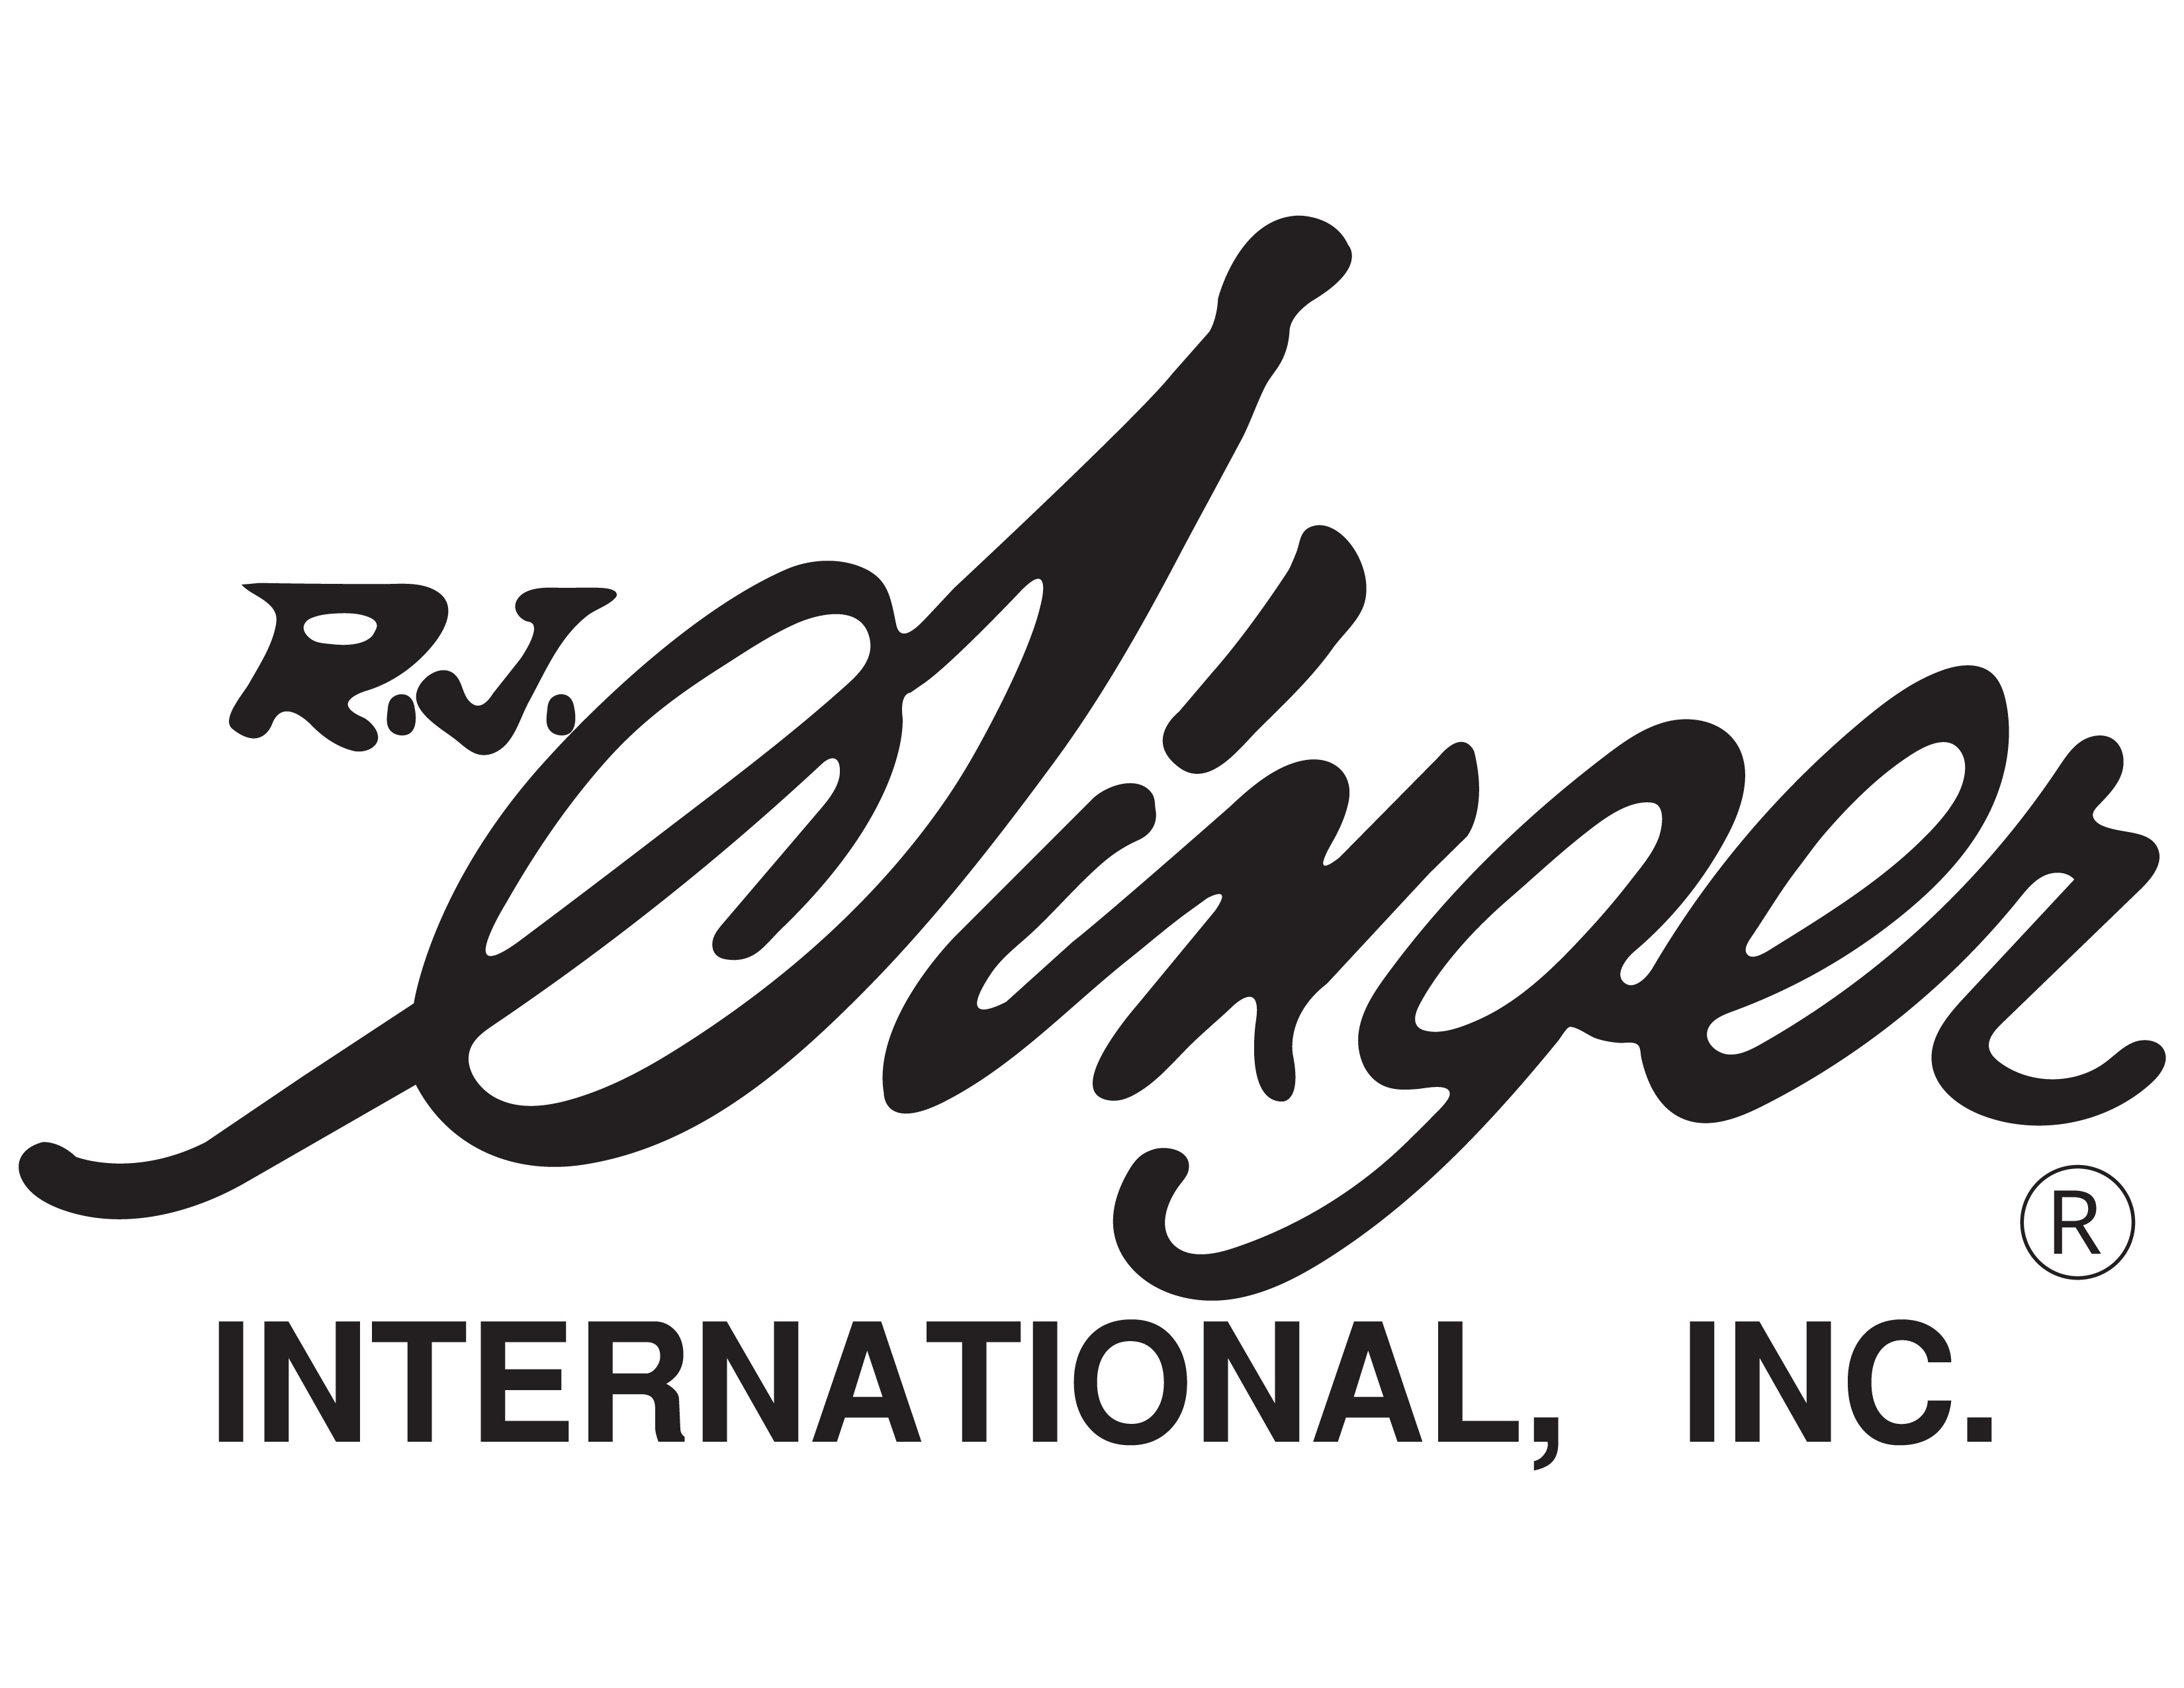 RJ Singer International Inc